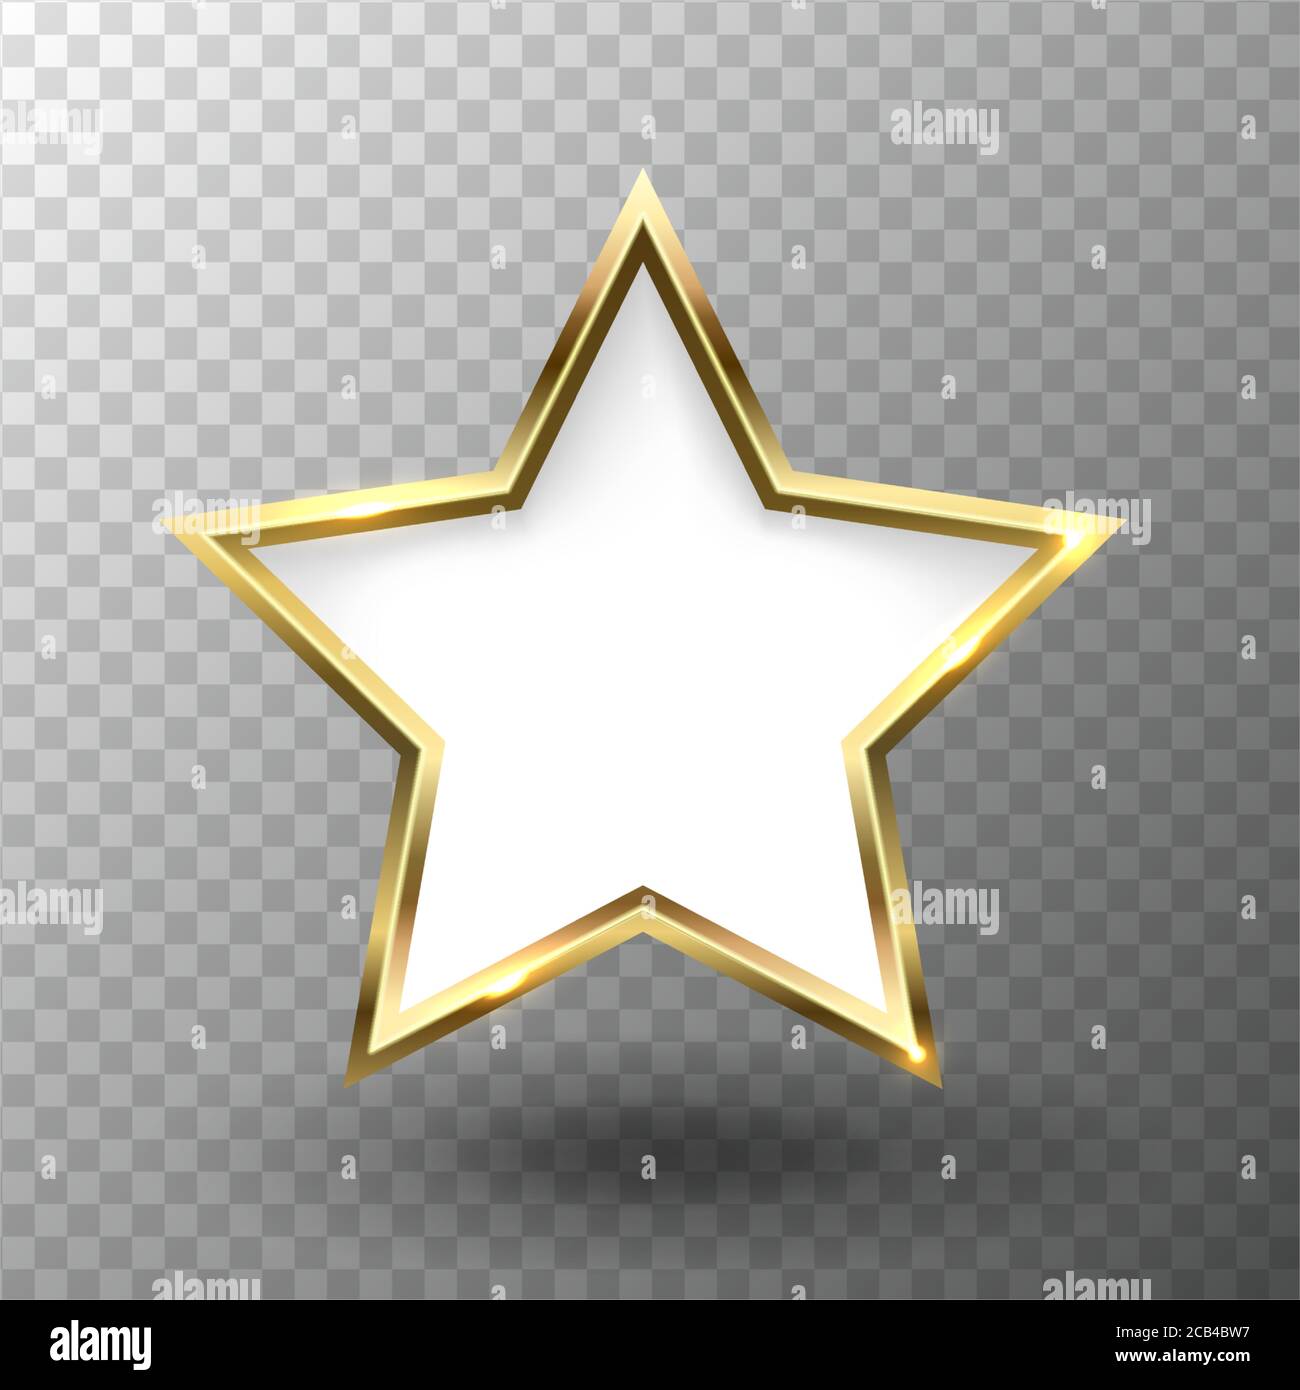 Cornice astratta con stella dorata lucida con spazio vuoto per il testo, su sfondo trasparente, illustrazione vettoriale. Illustrazione Vettoriale